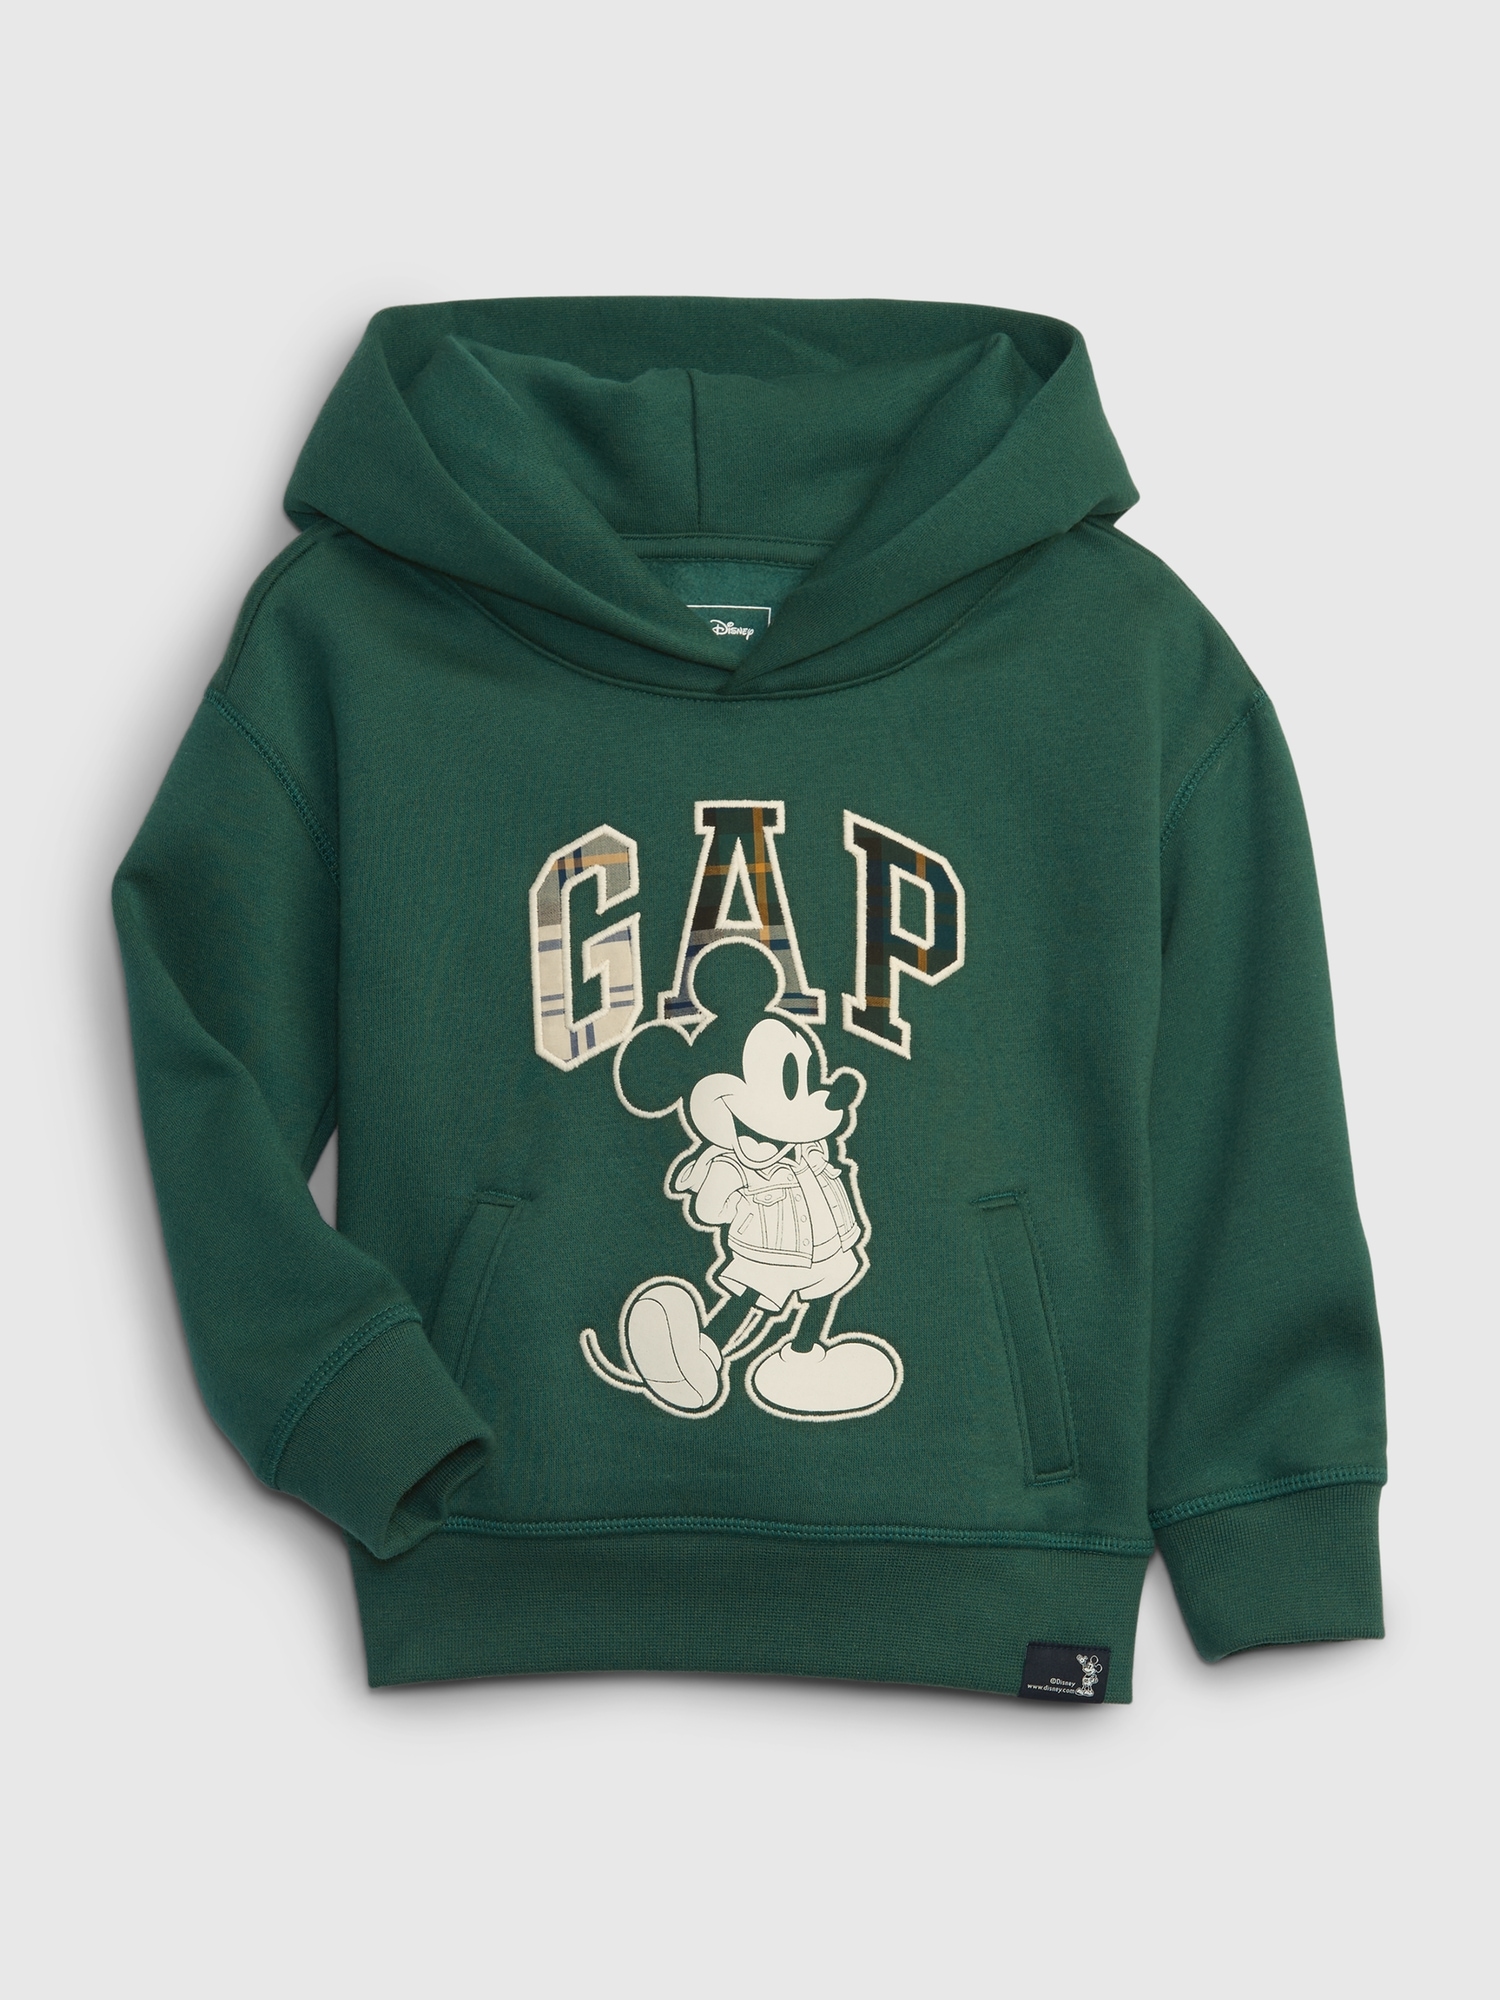 Gap Toddler Graphic Sweatshirt